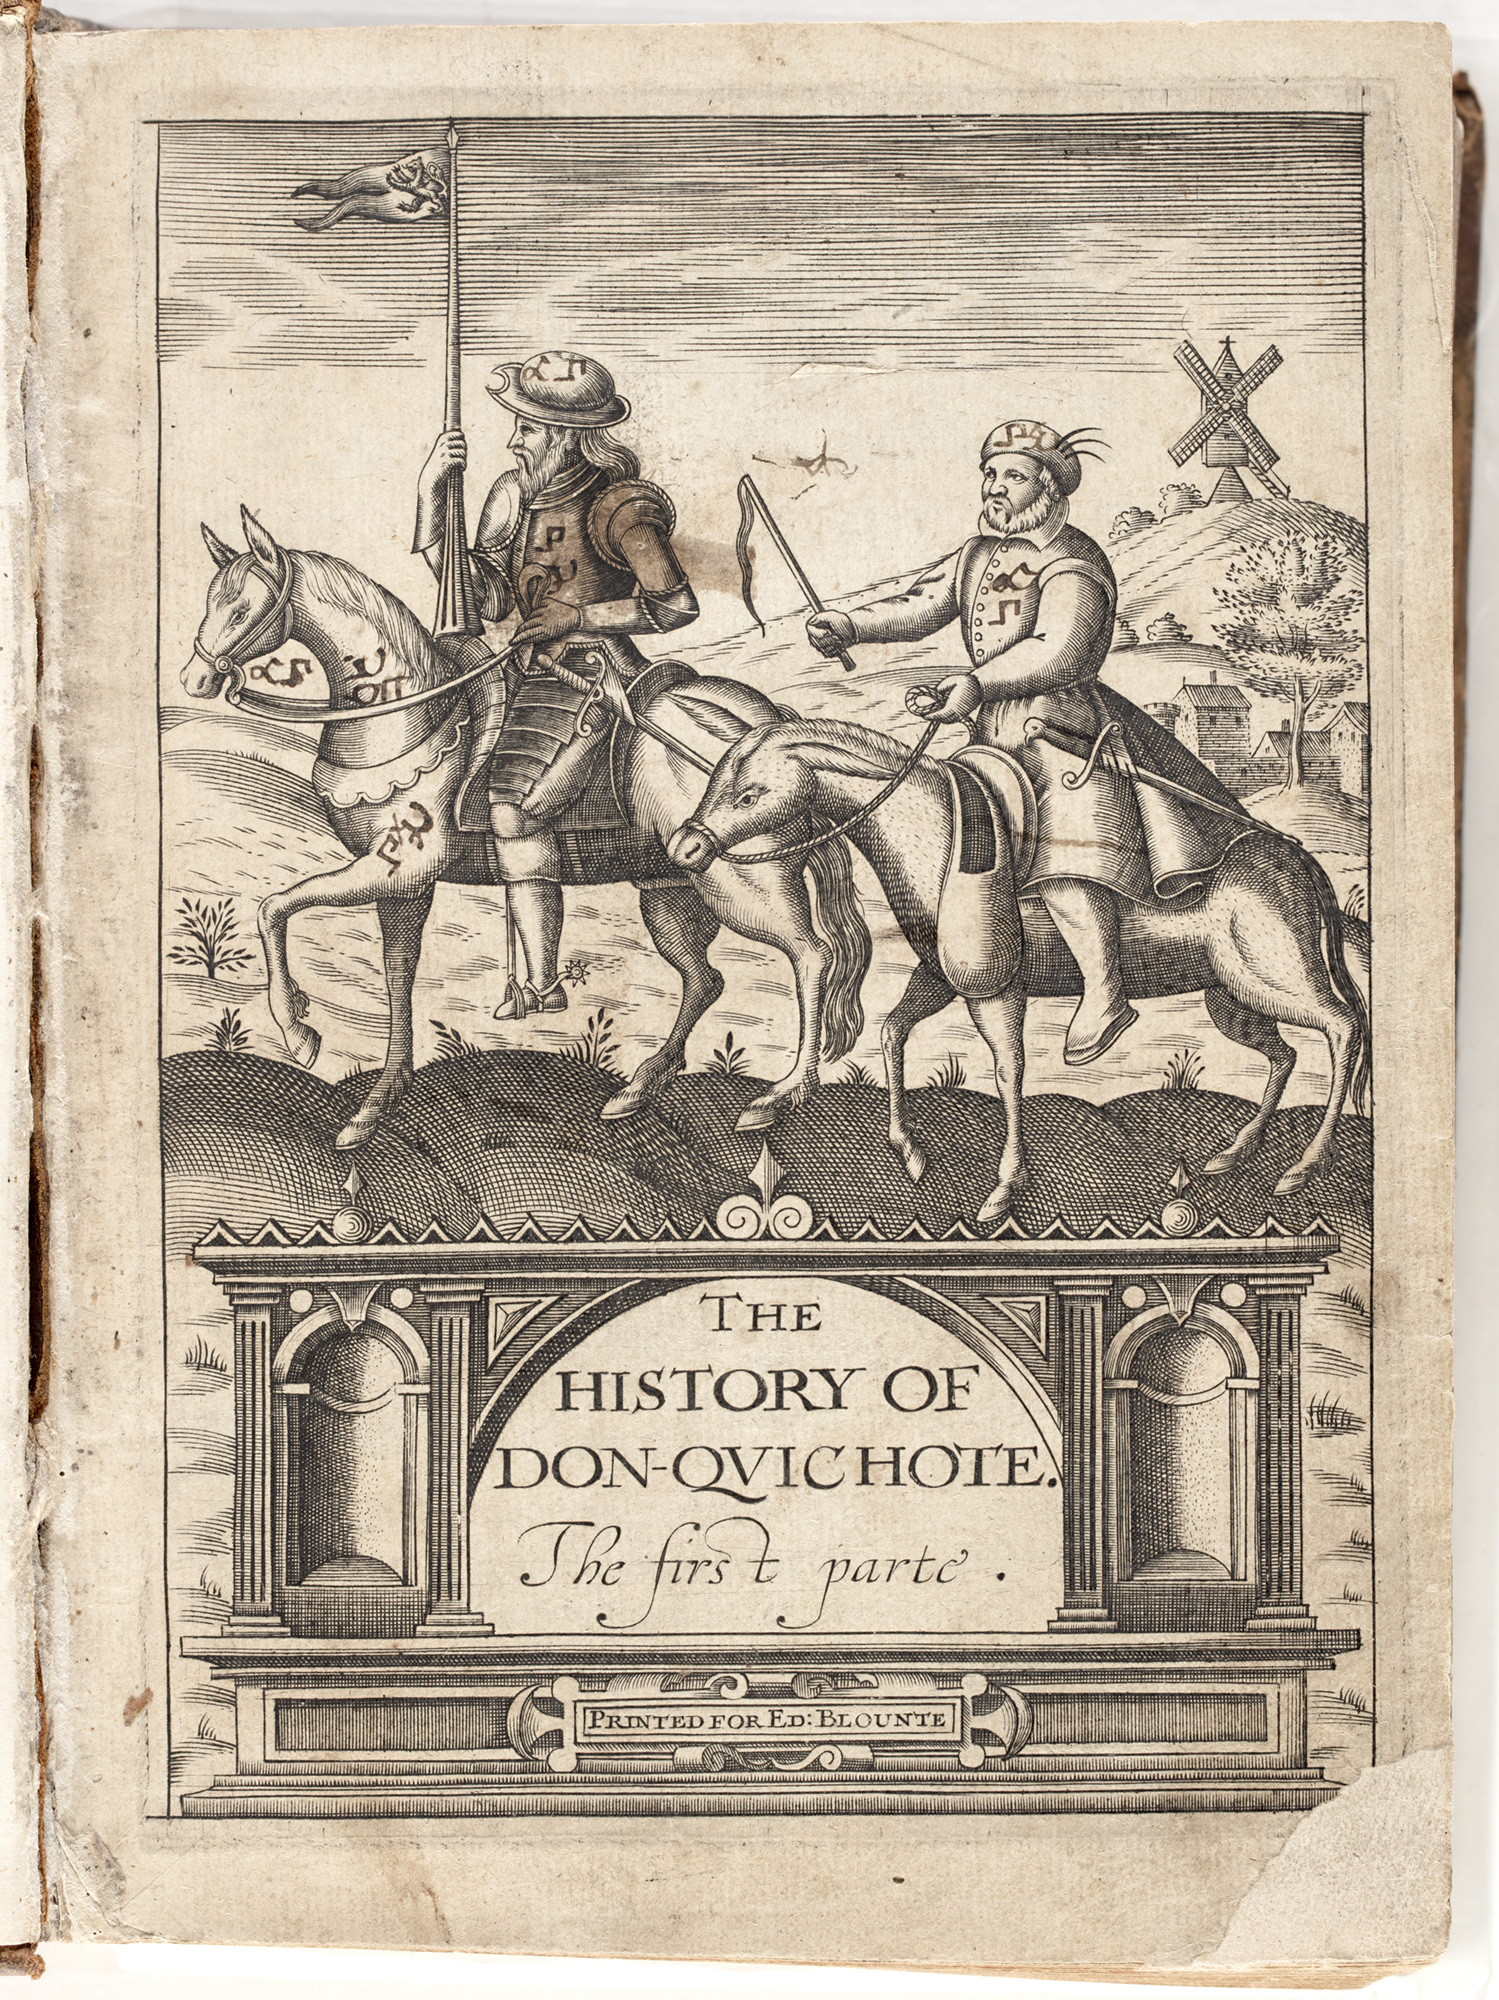 Don Quixote, 1620, by Miguel de Cervantes